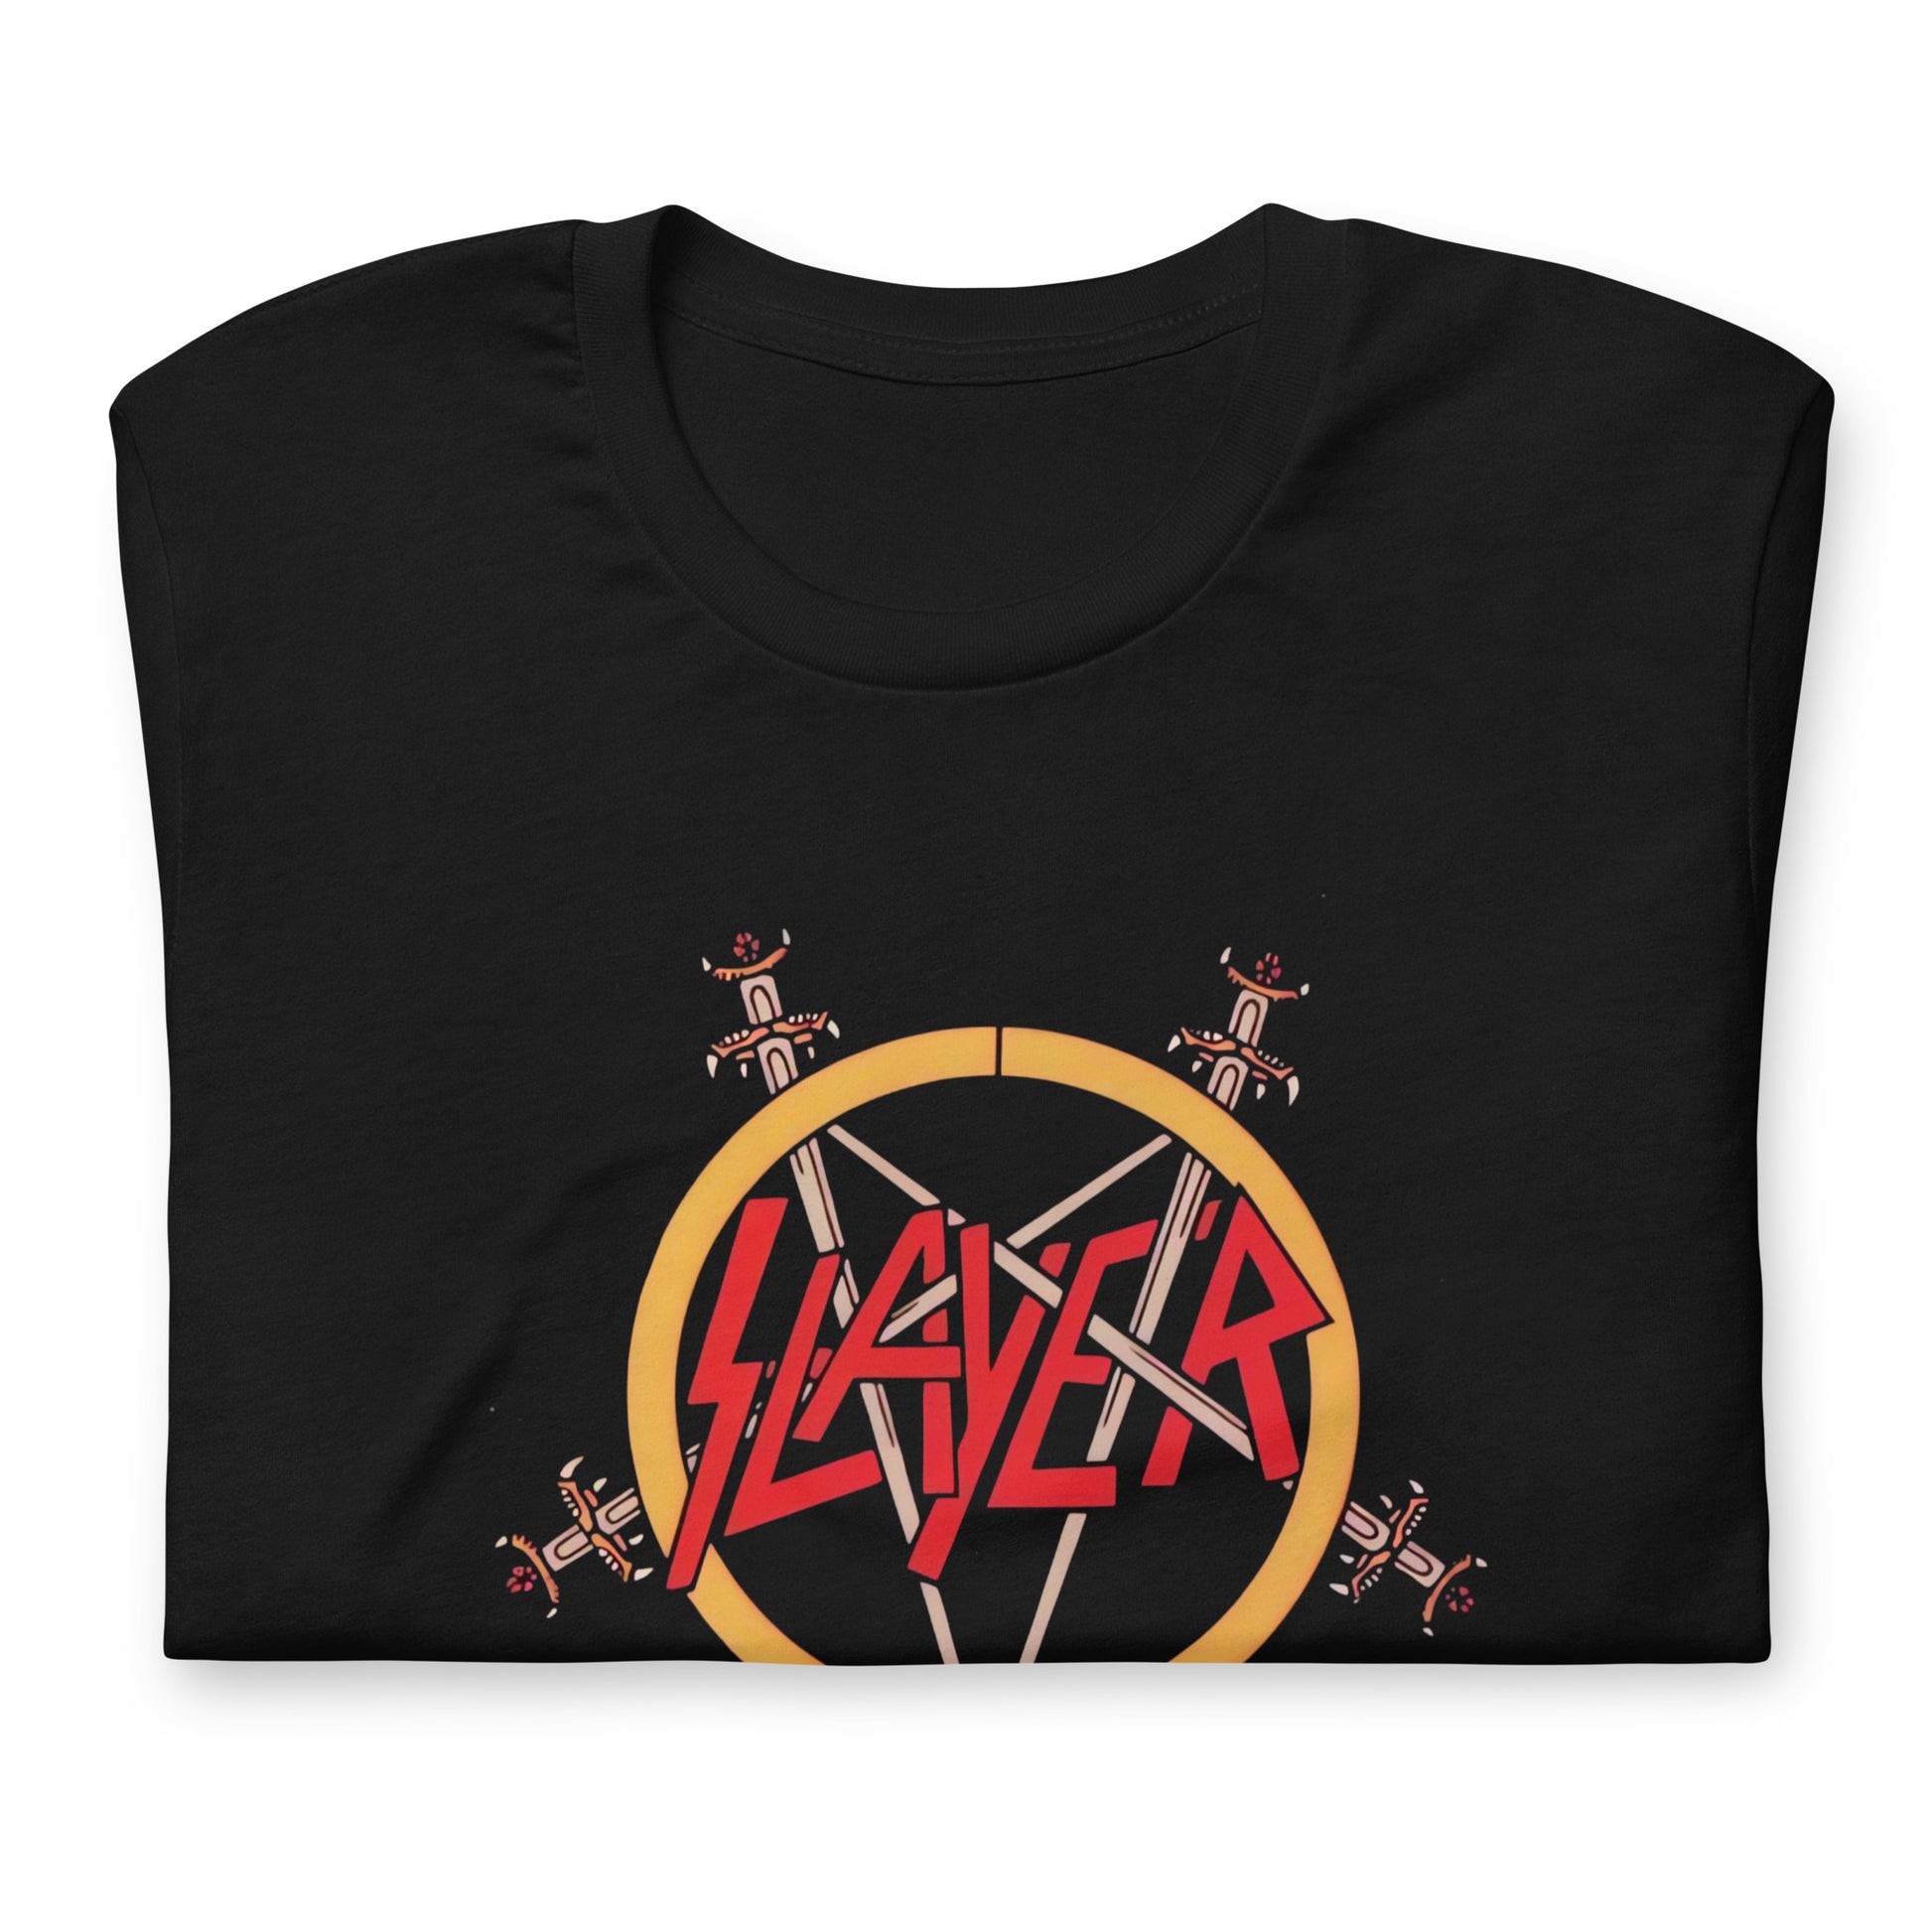 Si eres un fanático de la música metal, no te puedes perder la oportunidad de tener la playera de Slayer. comprar en linea. envíos internacionales.